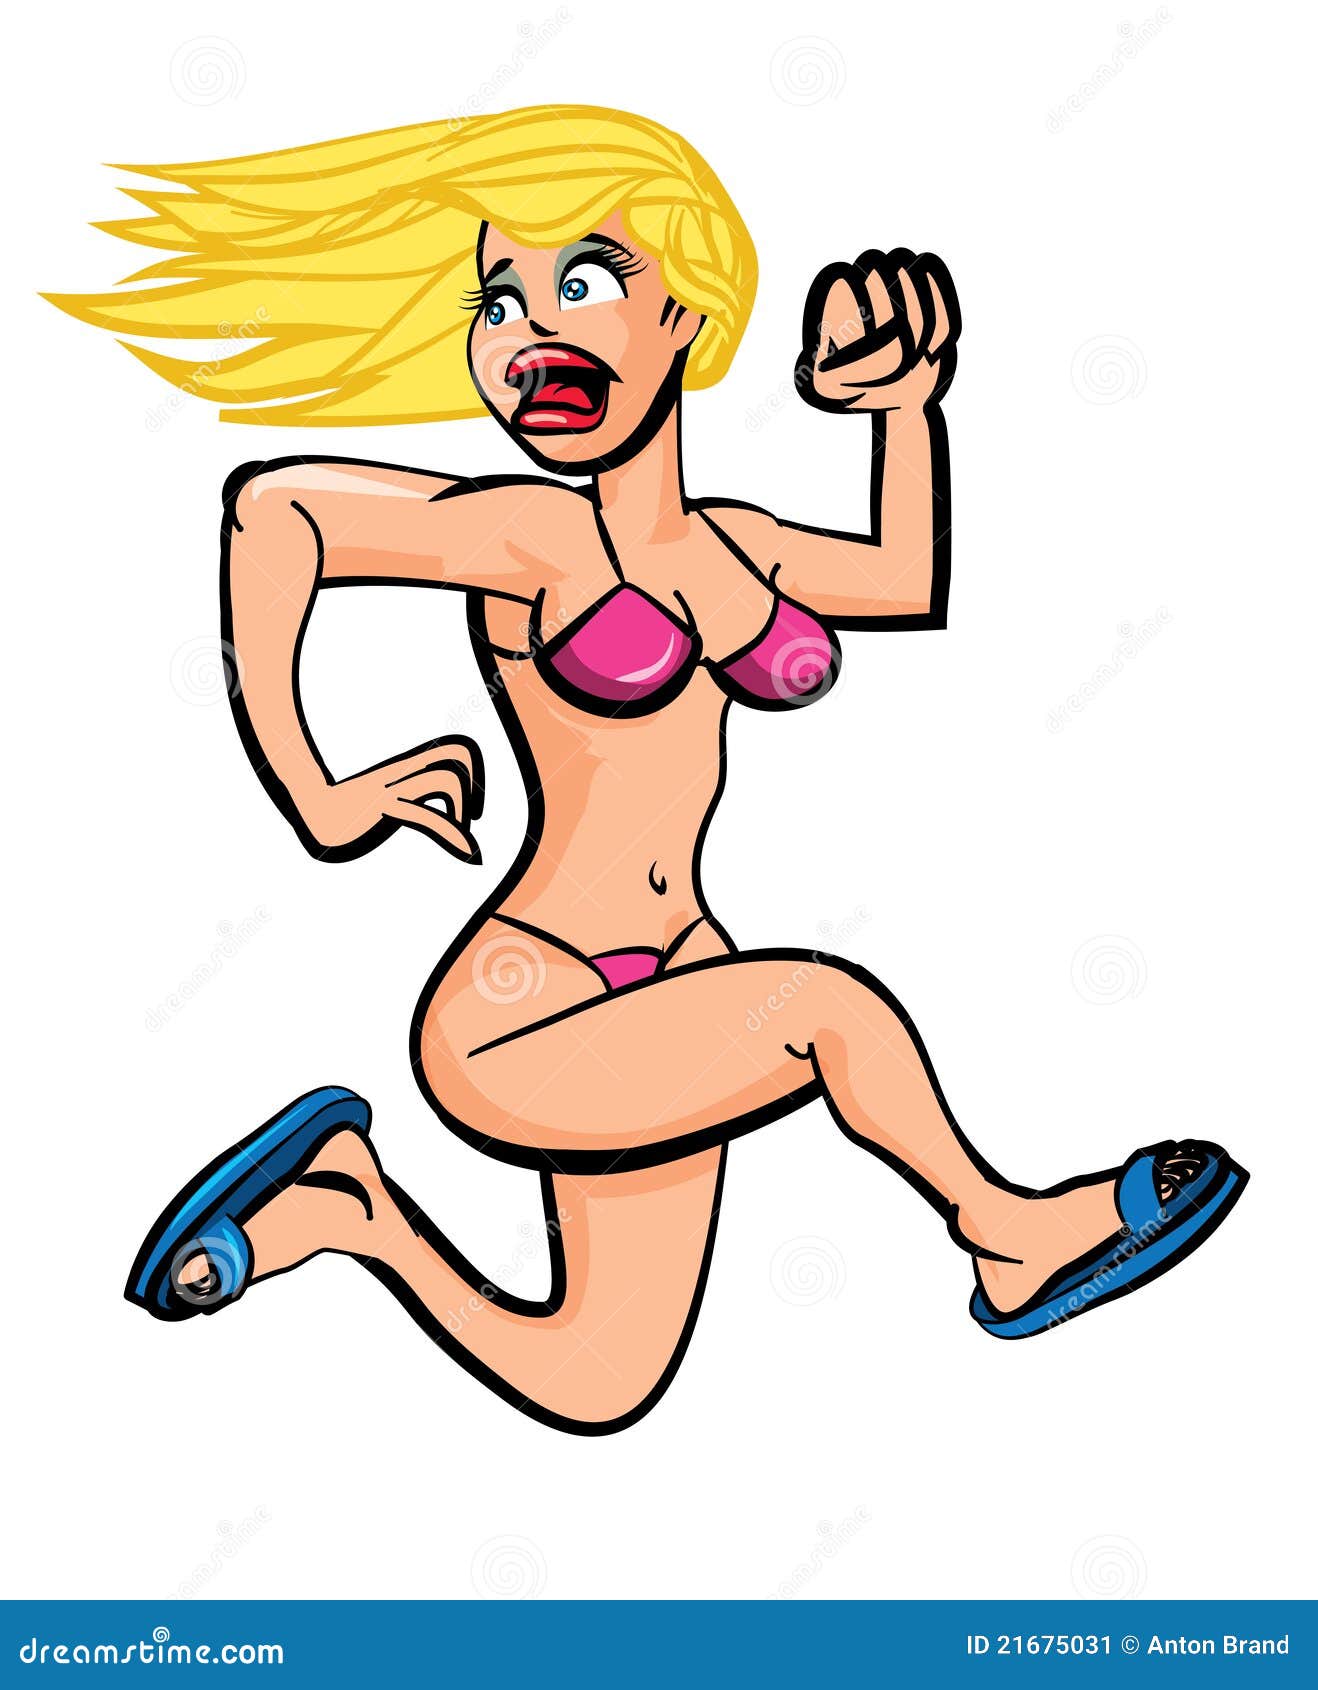 bikini girl running in terror